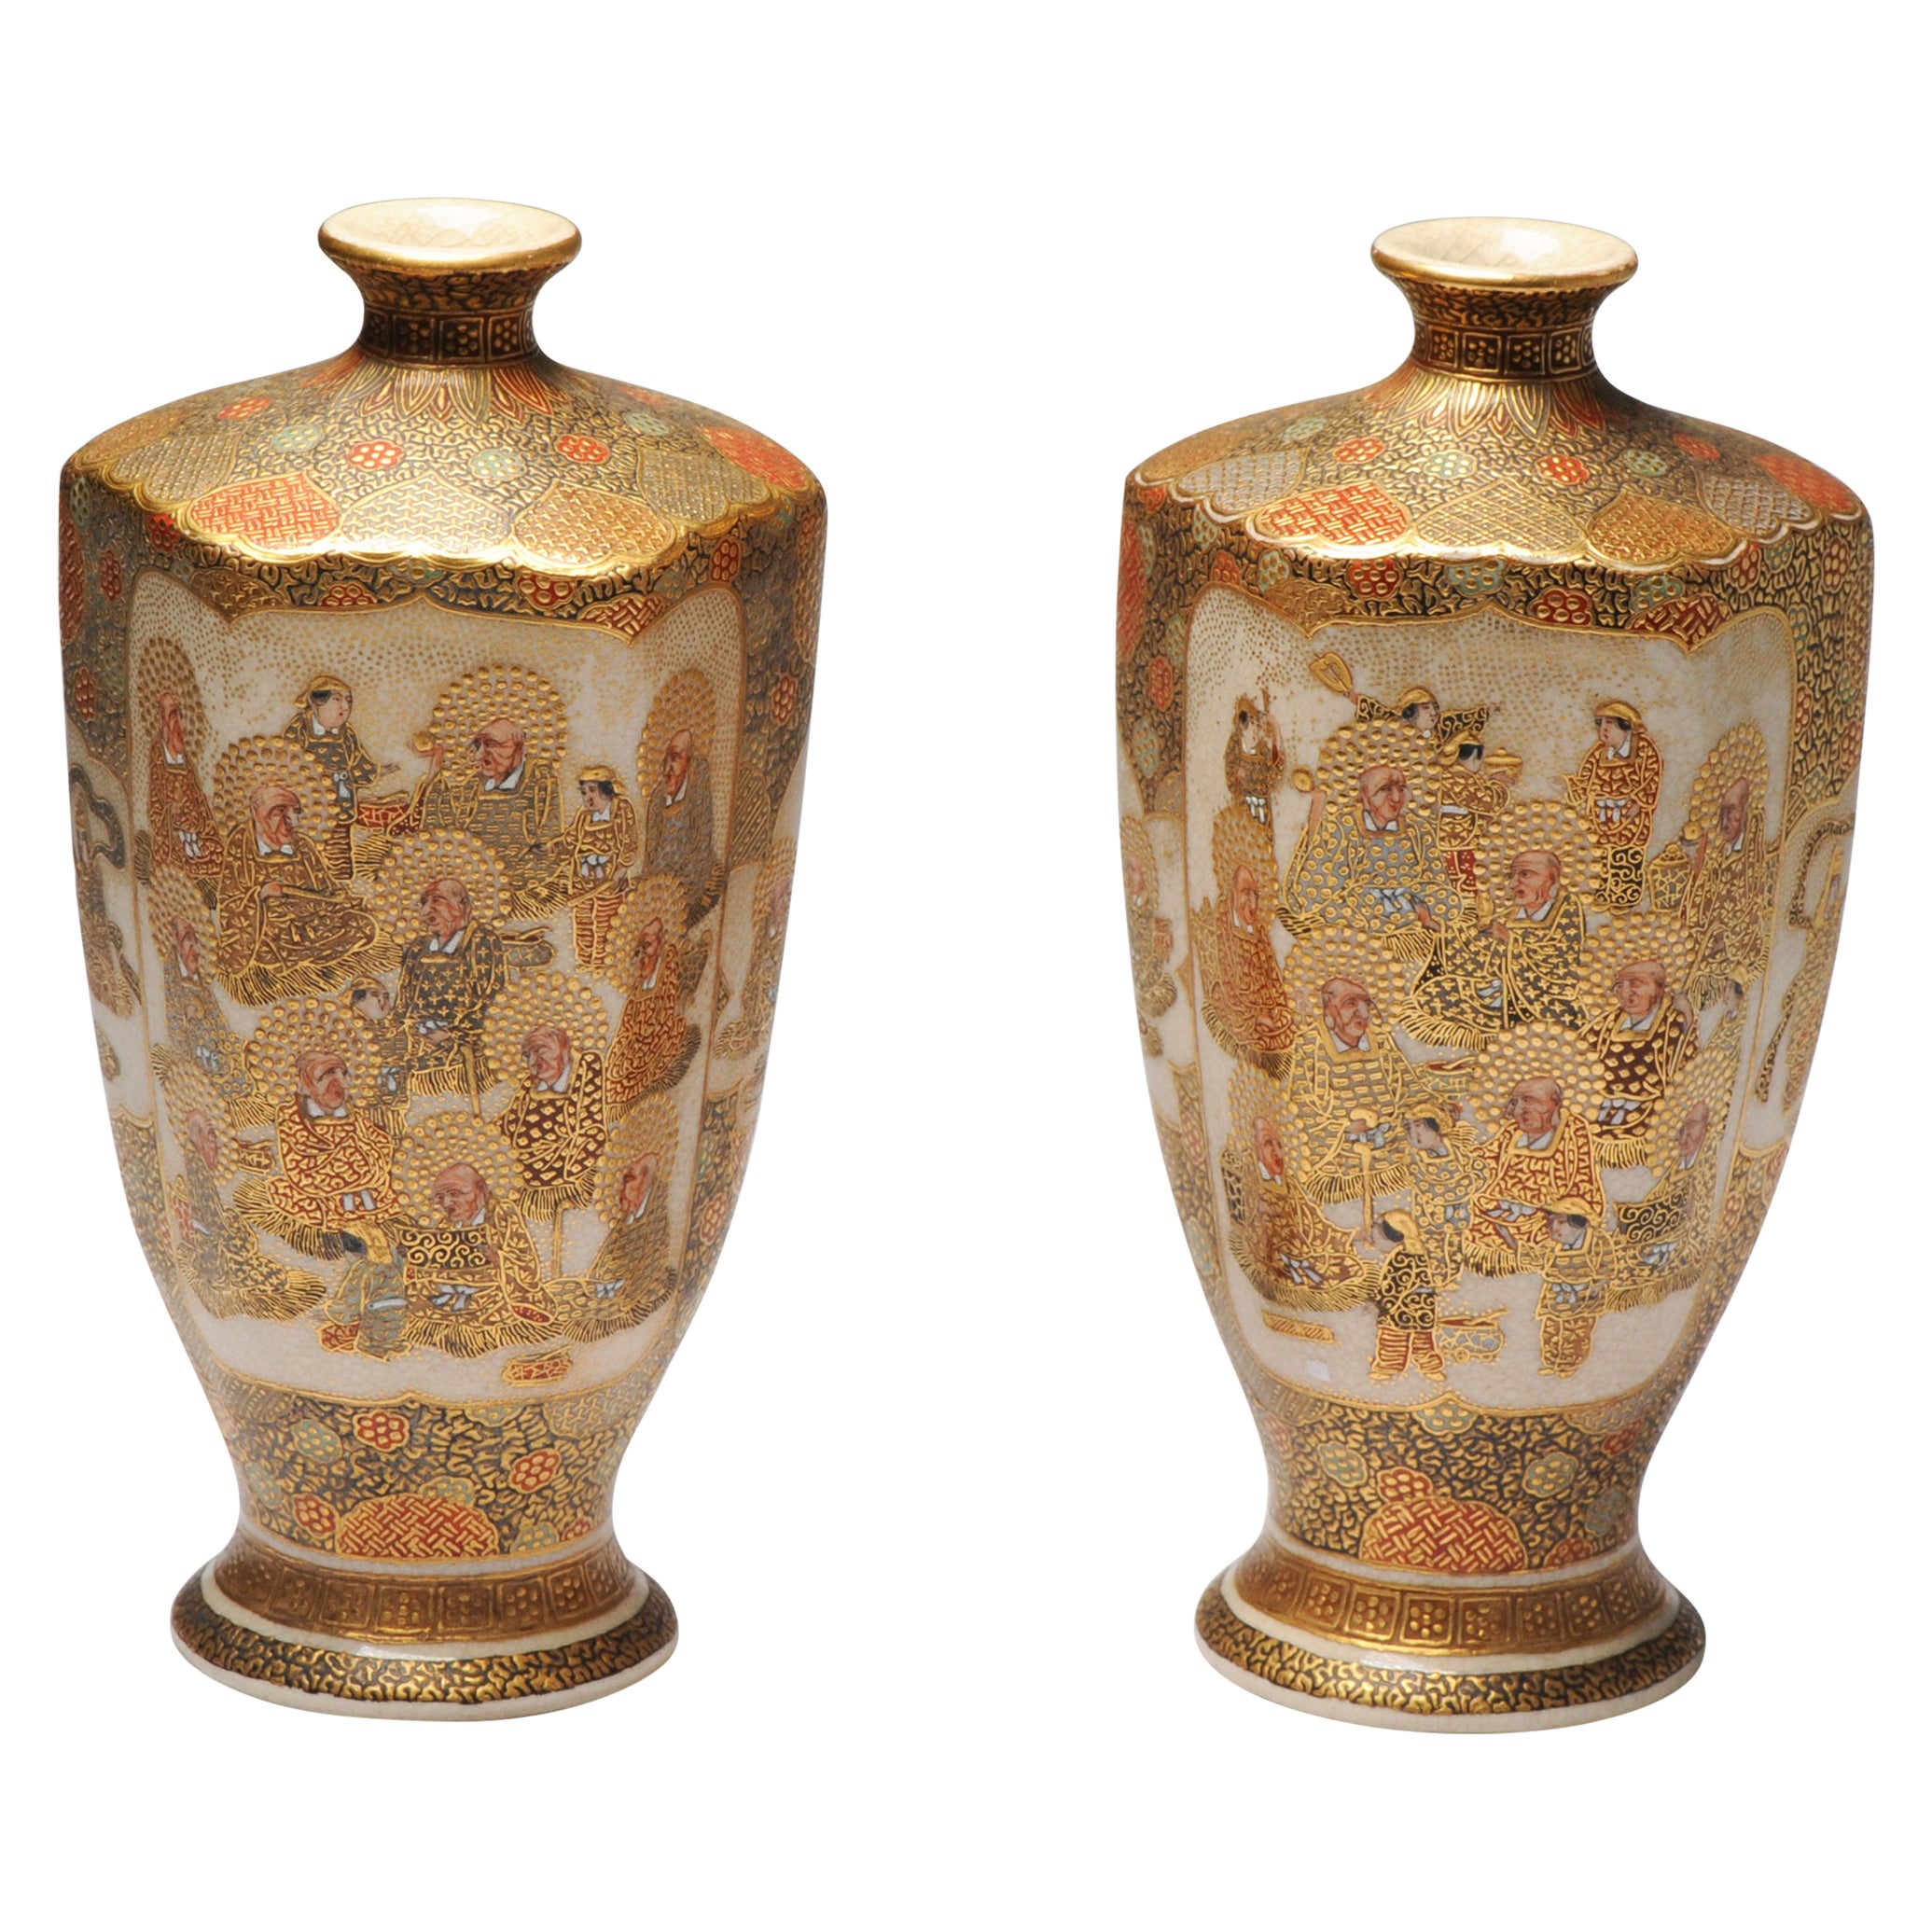 Pair Antique Meiji Japanese Satsuma Vase with Marked Base, 19th Century